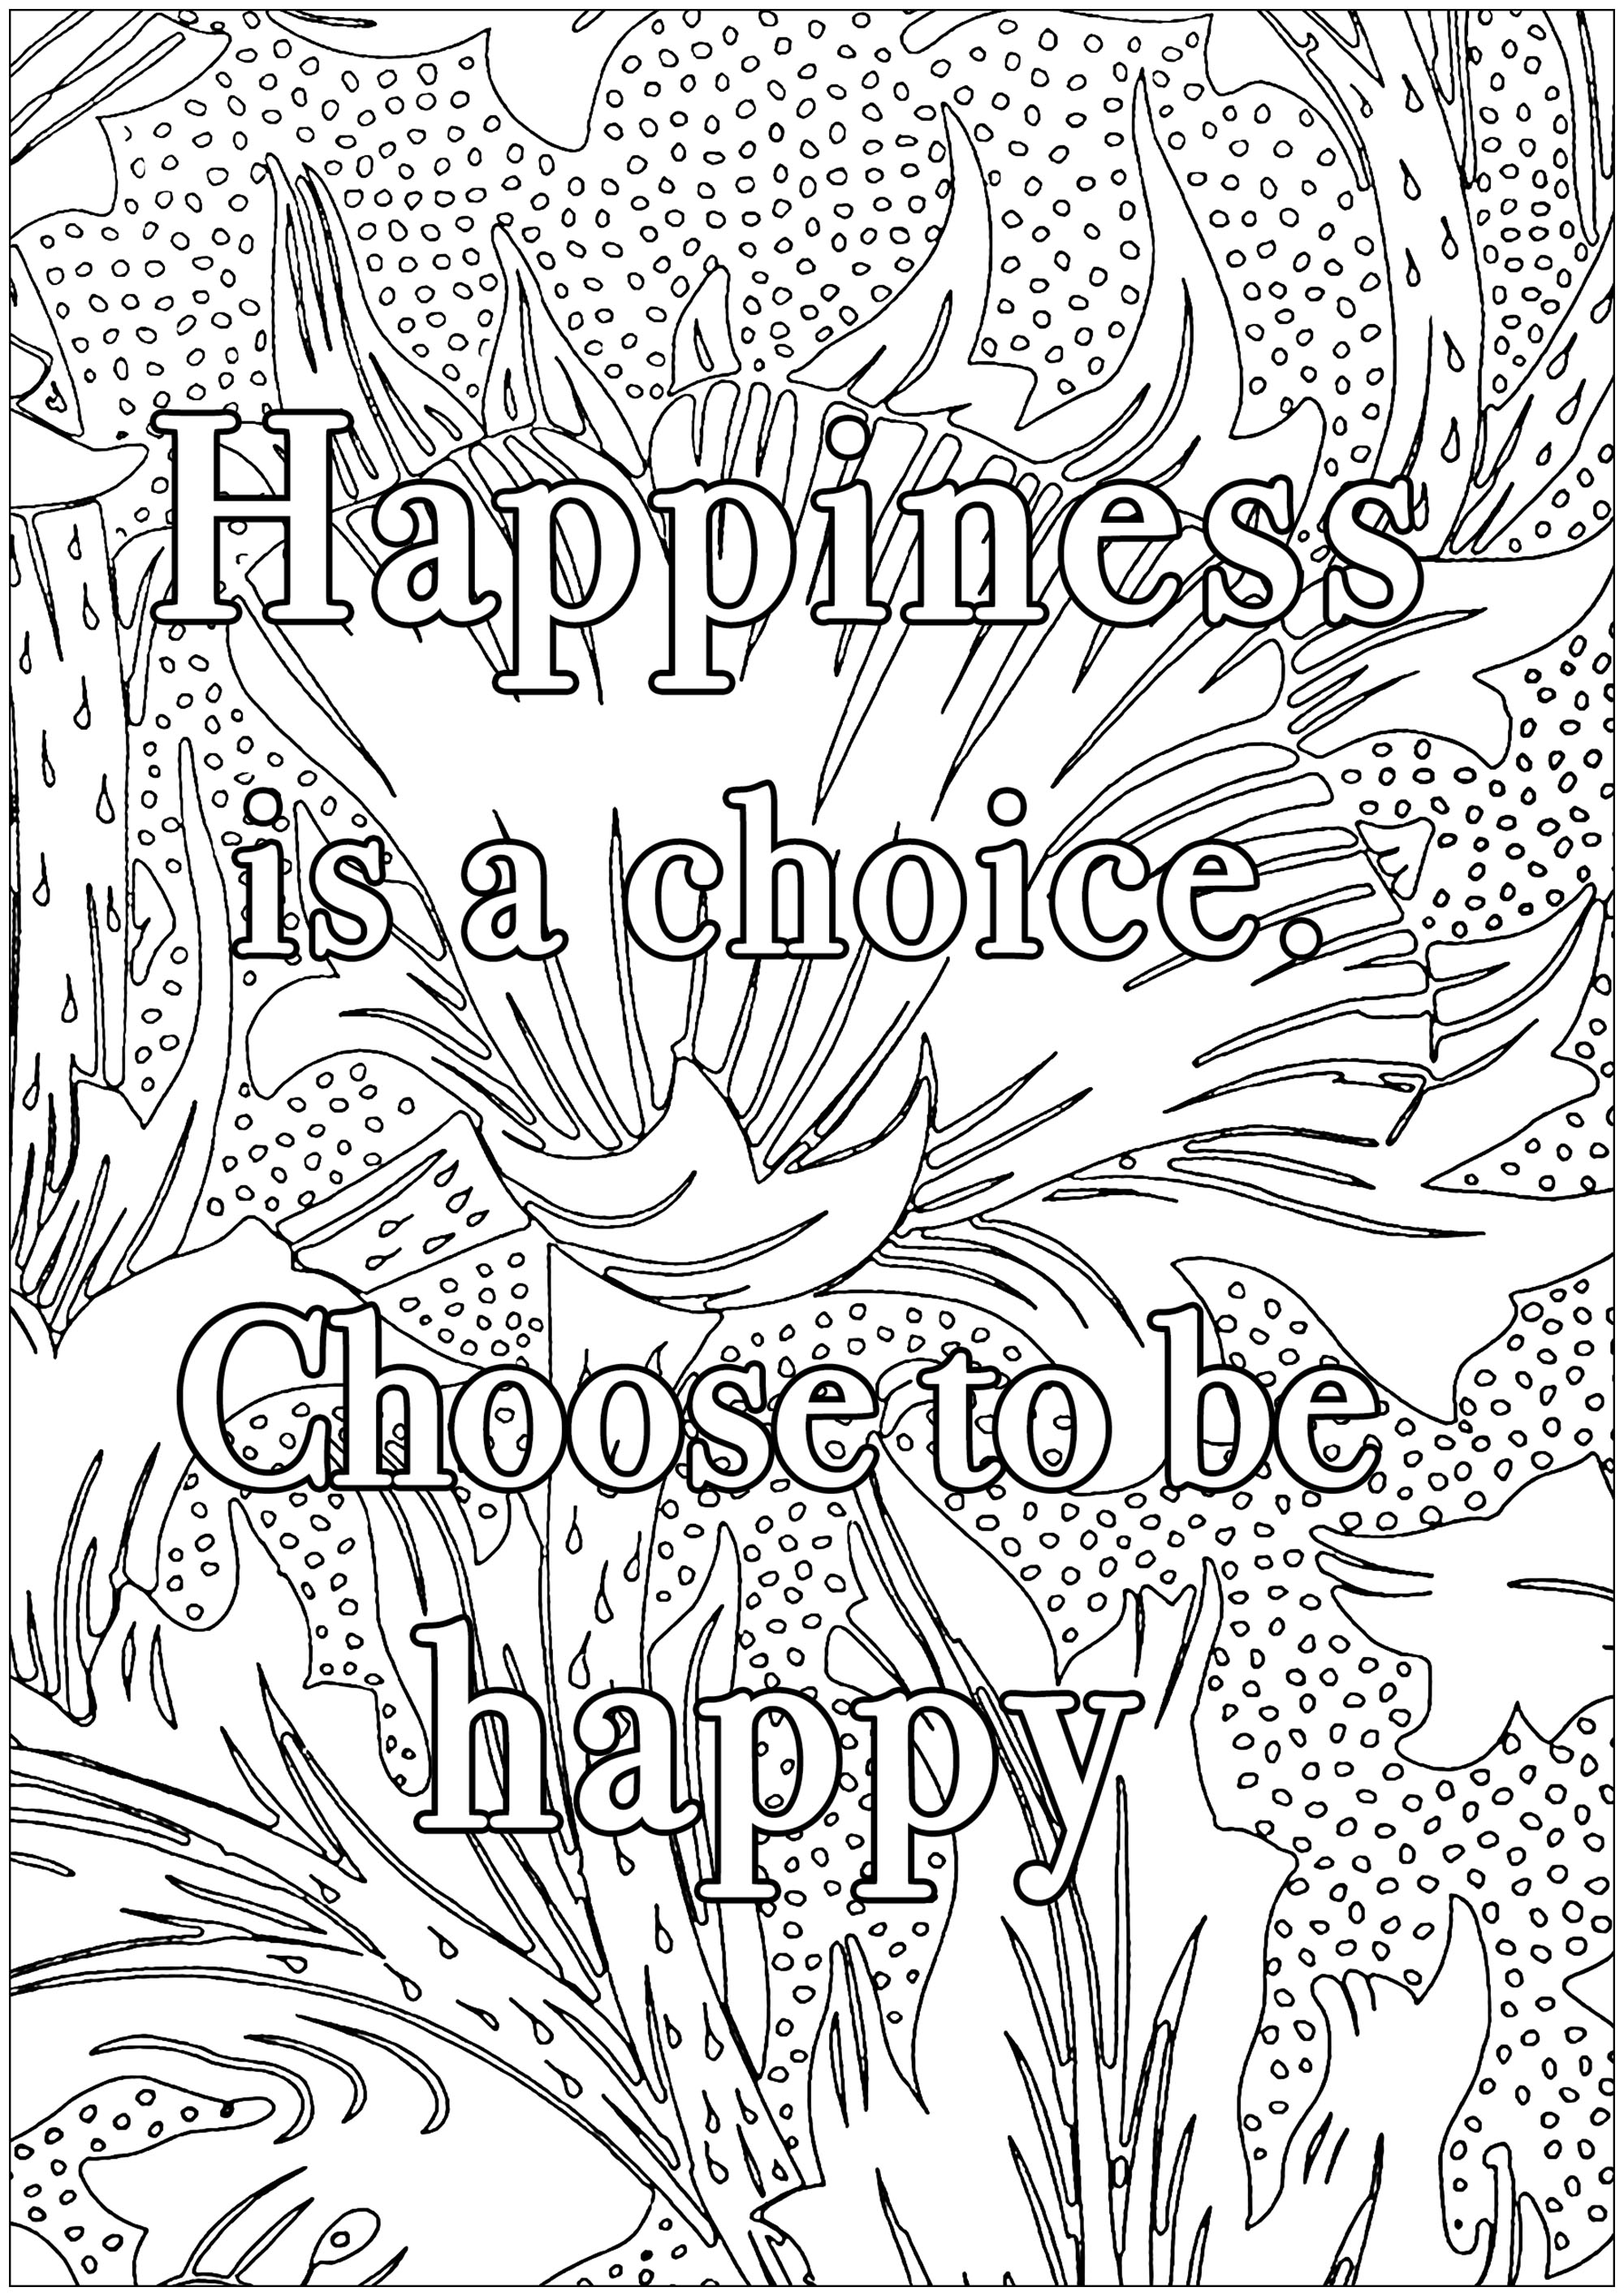 Happiness is a choice. Chose to be happy (Le bonheur est un choix. Choisis d'être heureux)